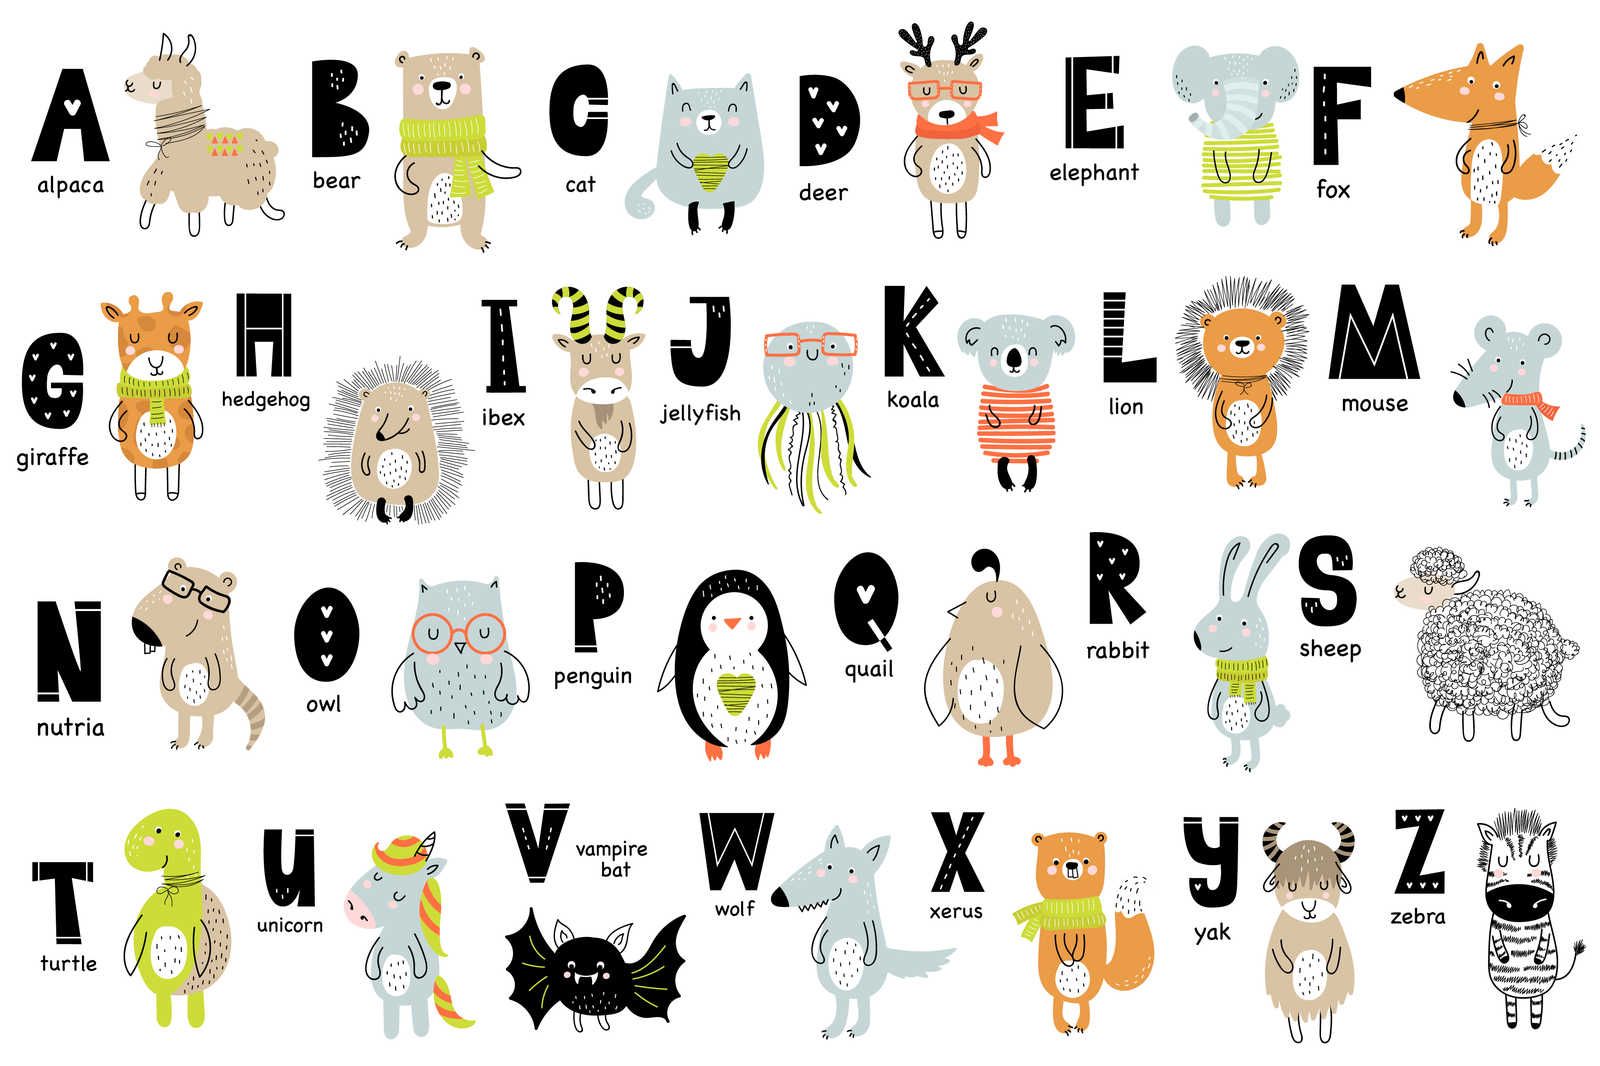             Leinwand Alphabet mit Tieren und Tiernamen – 90 cm x 60 cm
        